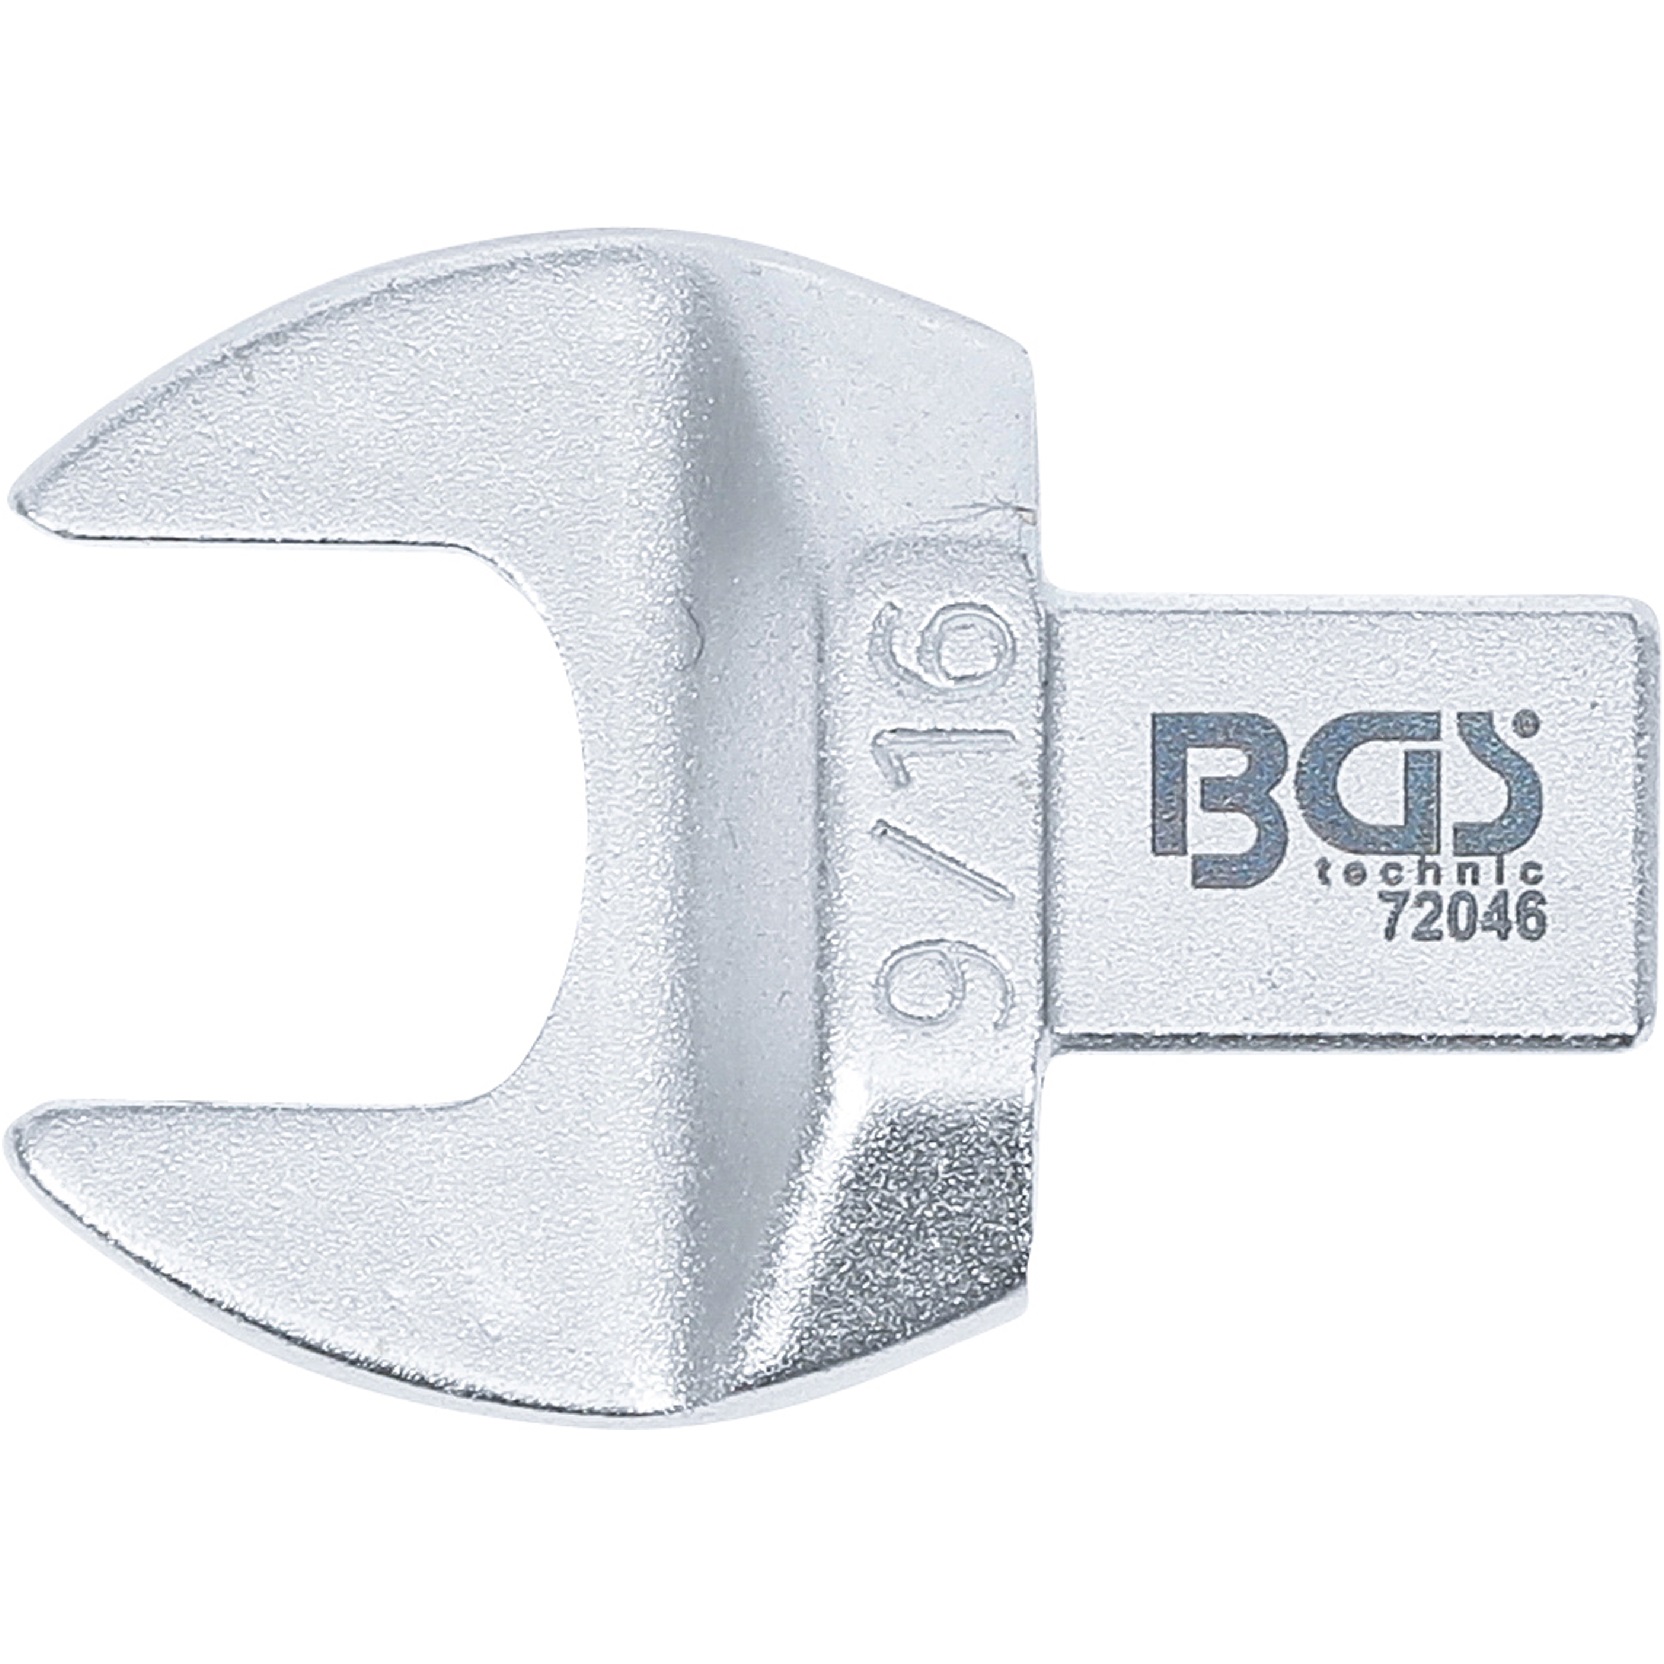 Kľúč nástrčný plochý vidlicový, palcový 9/16", 4-hran 9 x 12 mm, BGS 72046